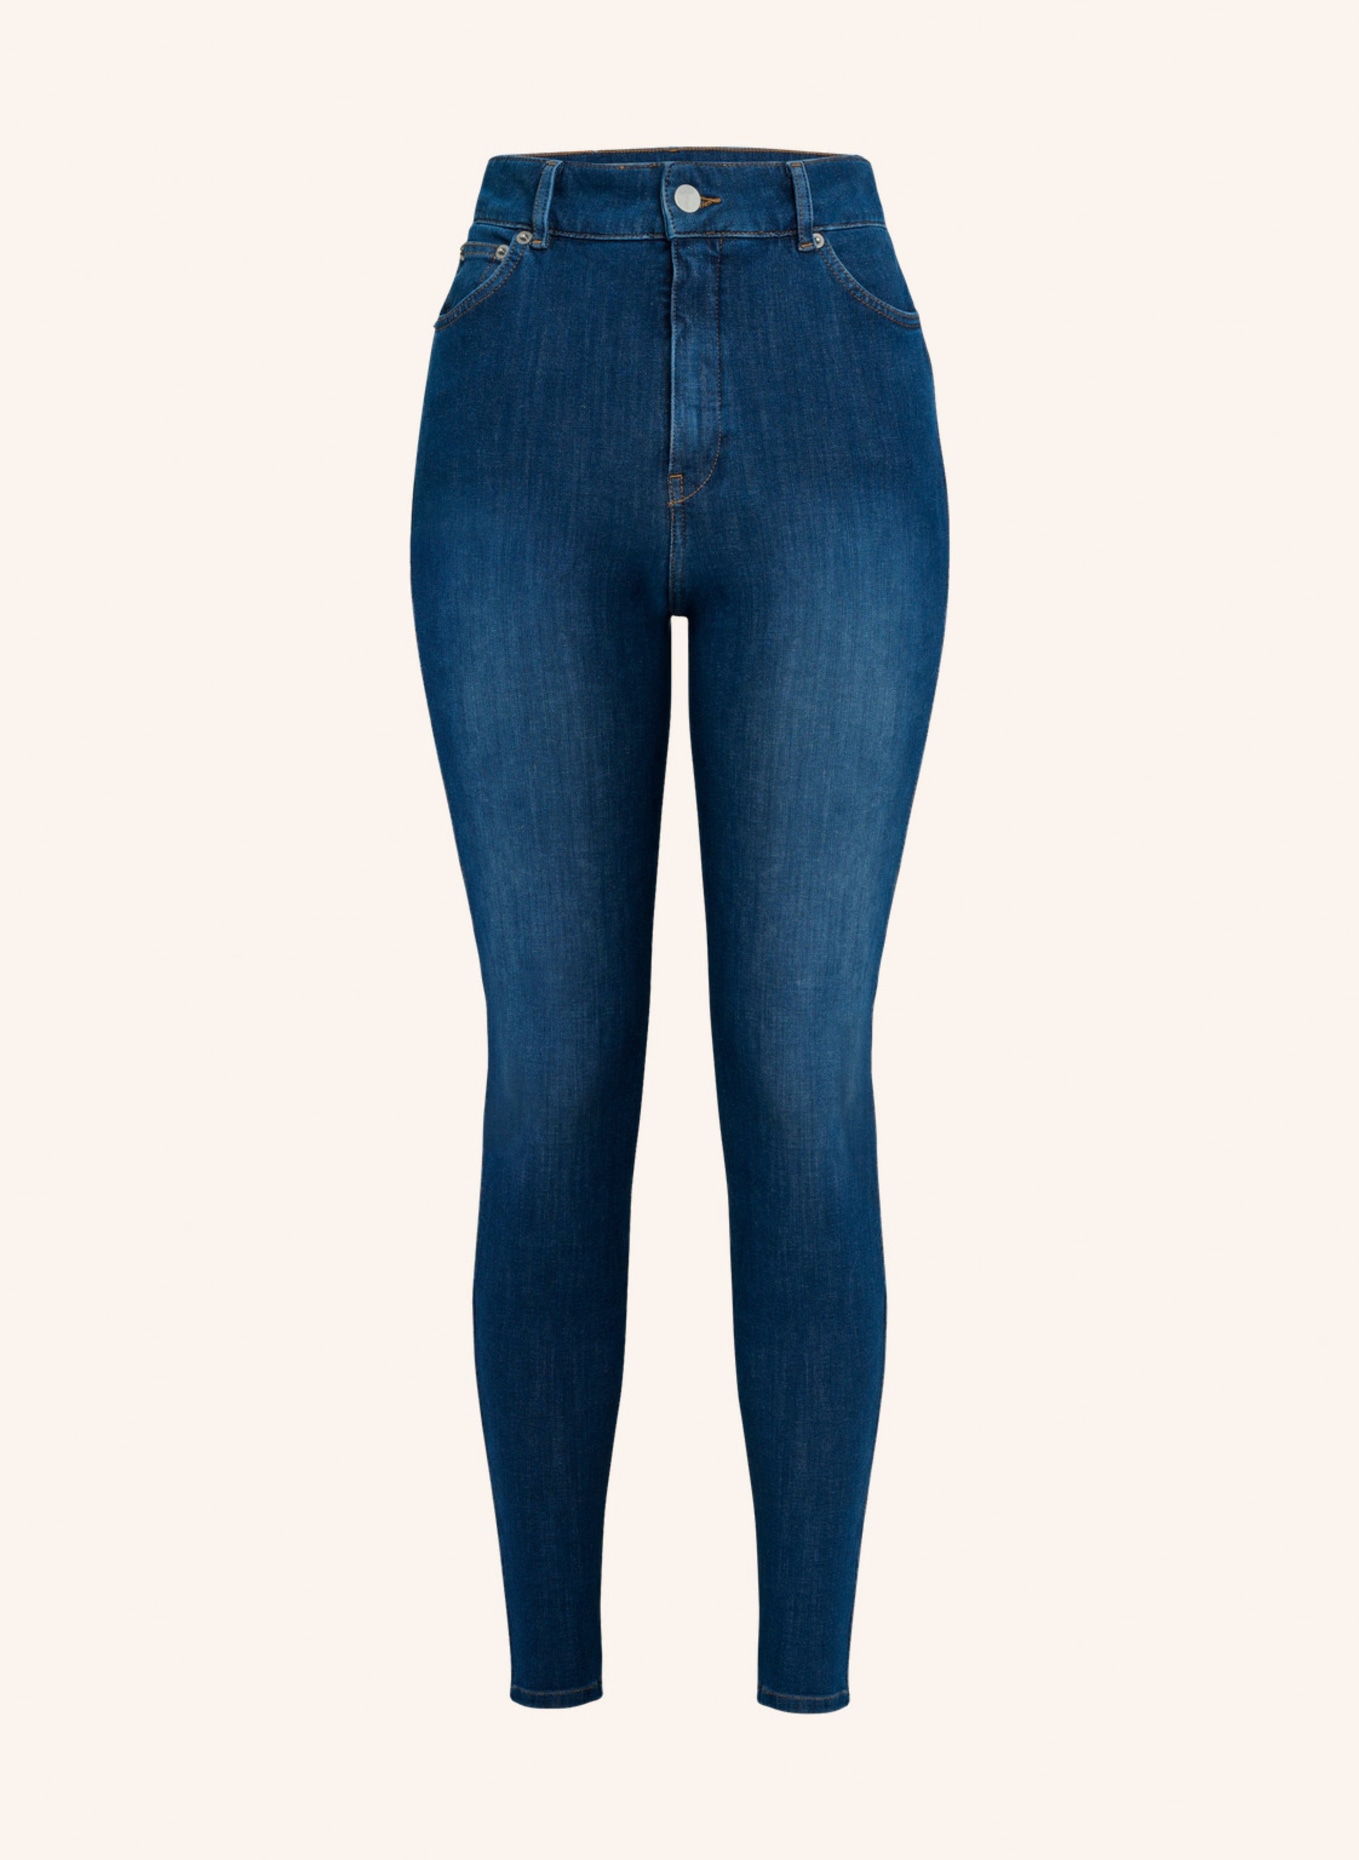 ITEM m6 Jeans SKINNY HIGH RISE mit Shaping-Effekt, Farbe: BLAU (Bild 1)